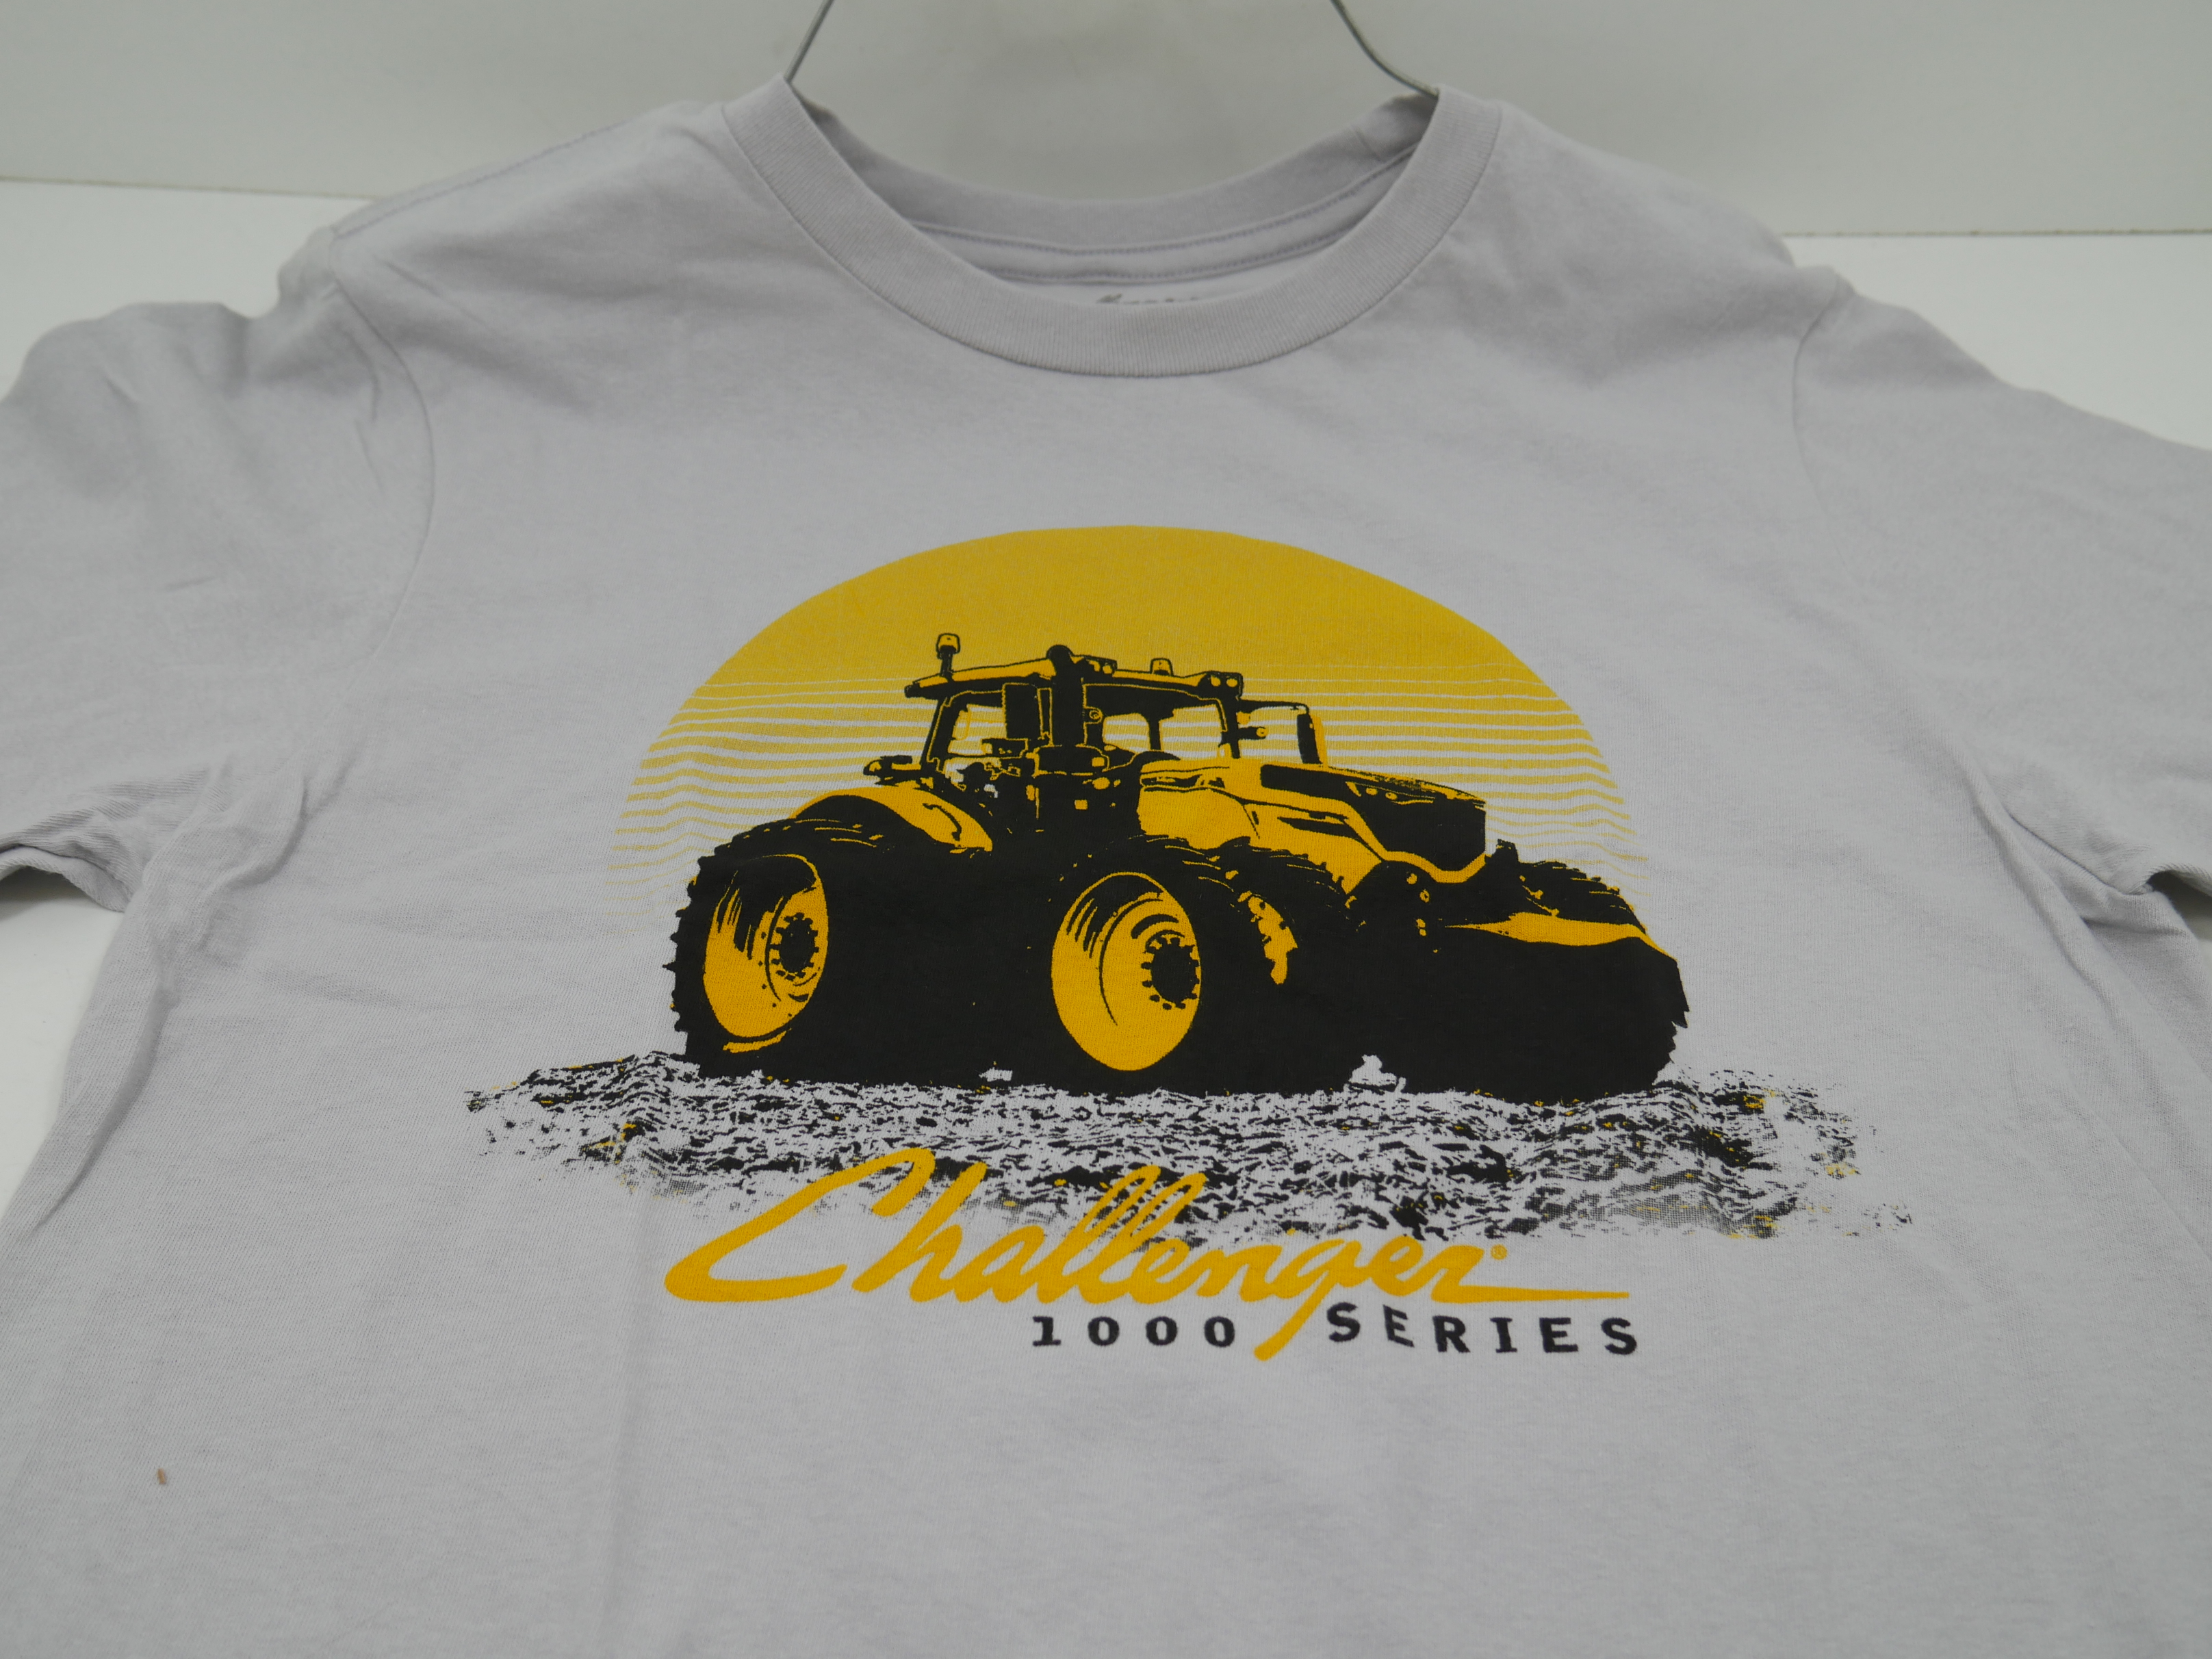 Challenger 1000 Series T-Shirt